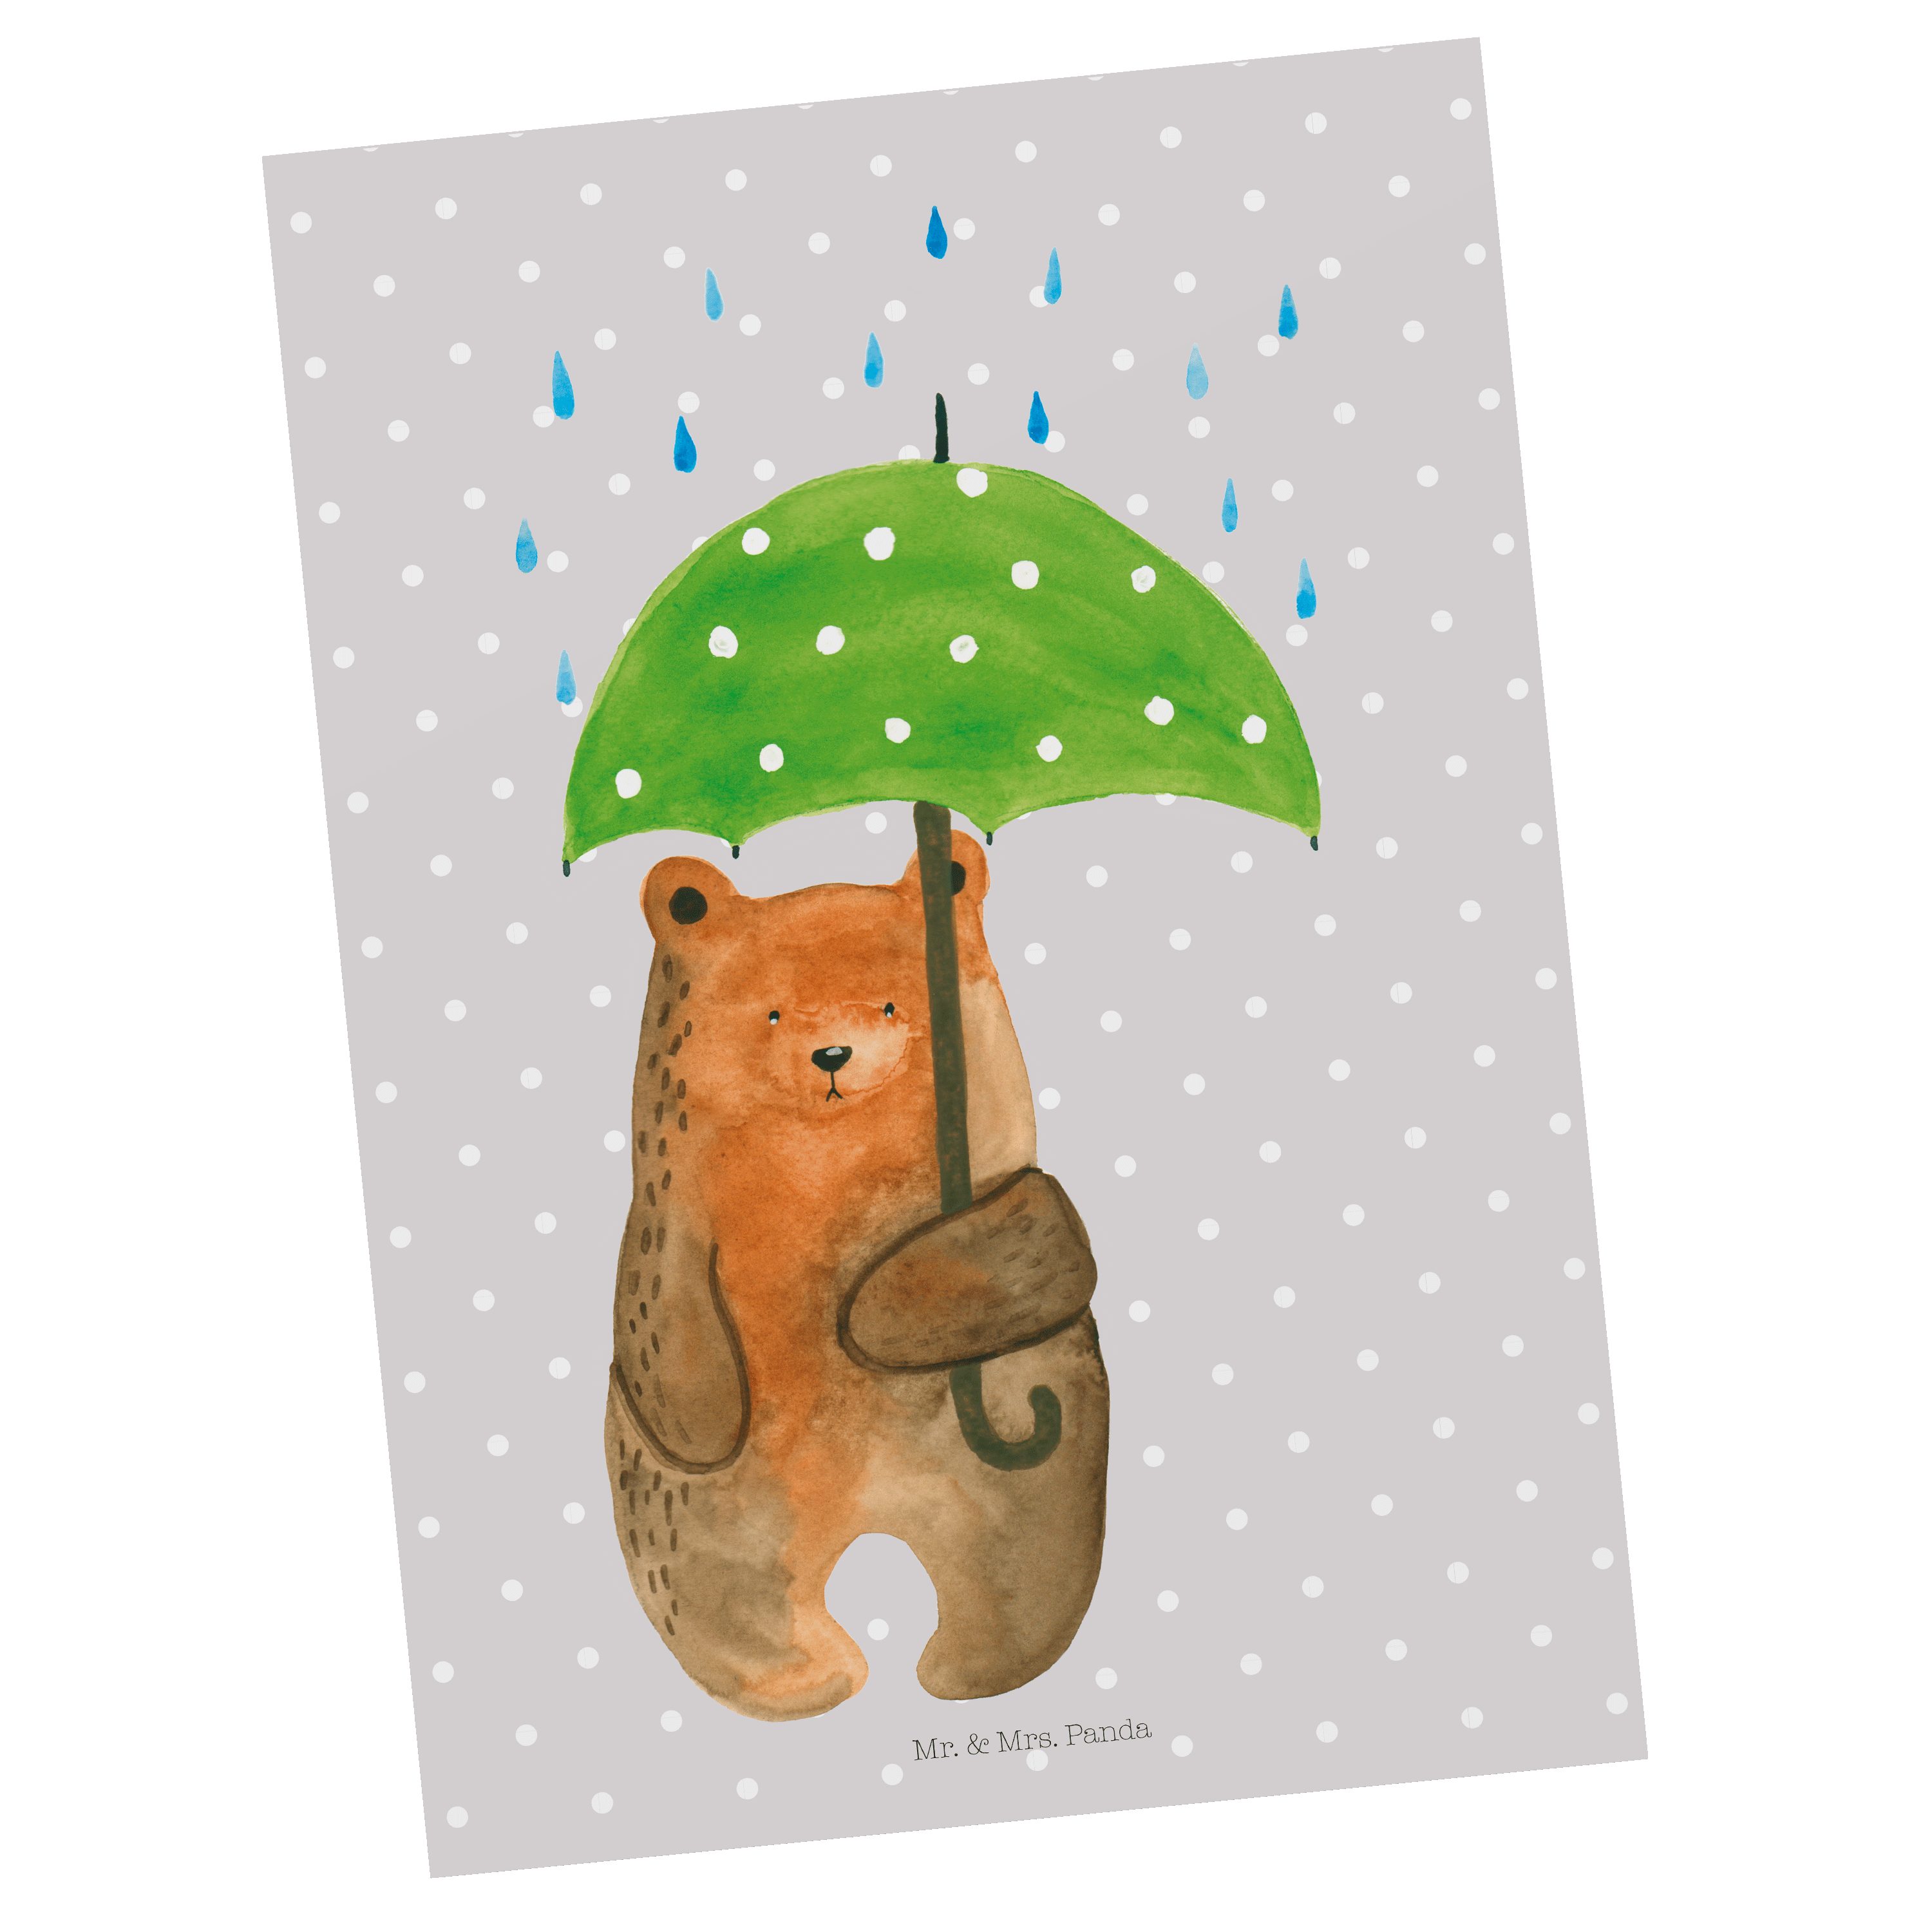 Mr. & Mrs. Panda Postkarte Bär mit Regenschirm - Grau Pastell - Geschenk, Freunde, Liebeskummer